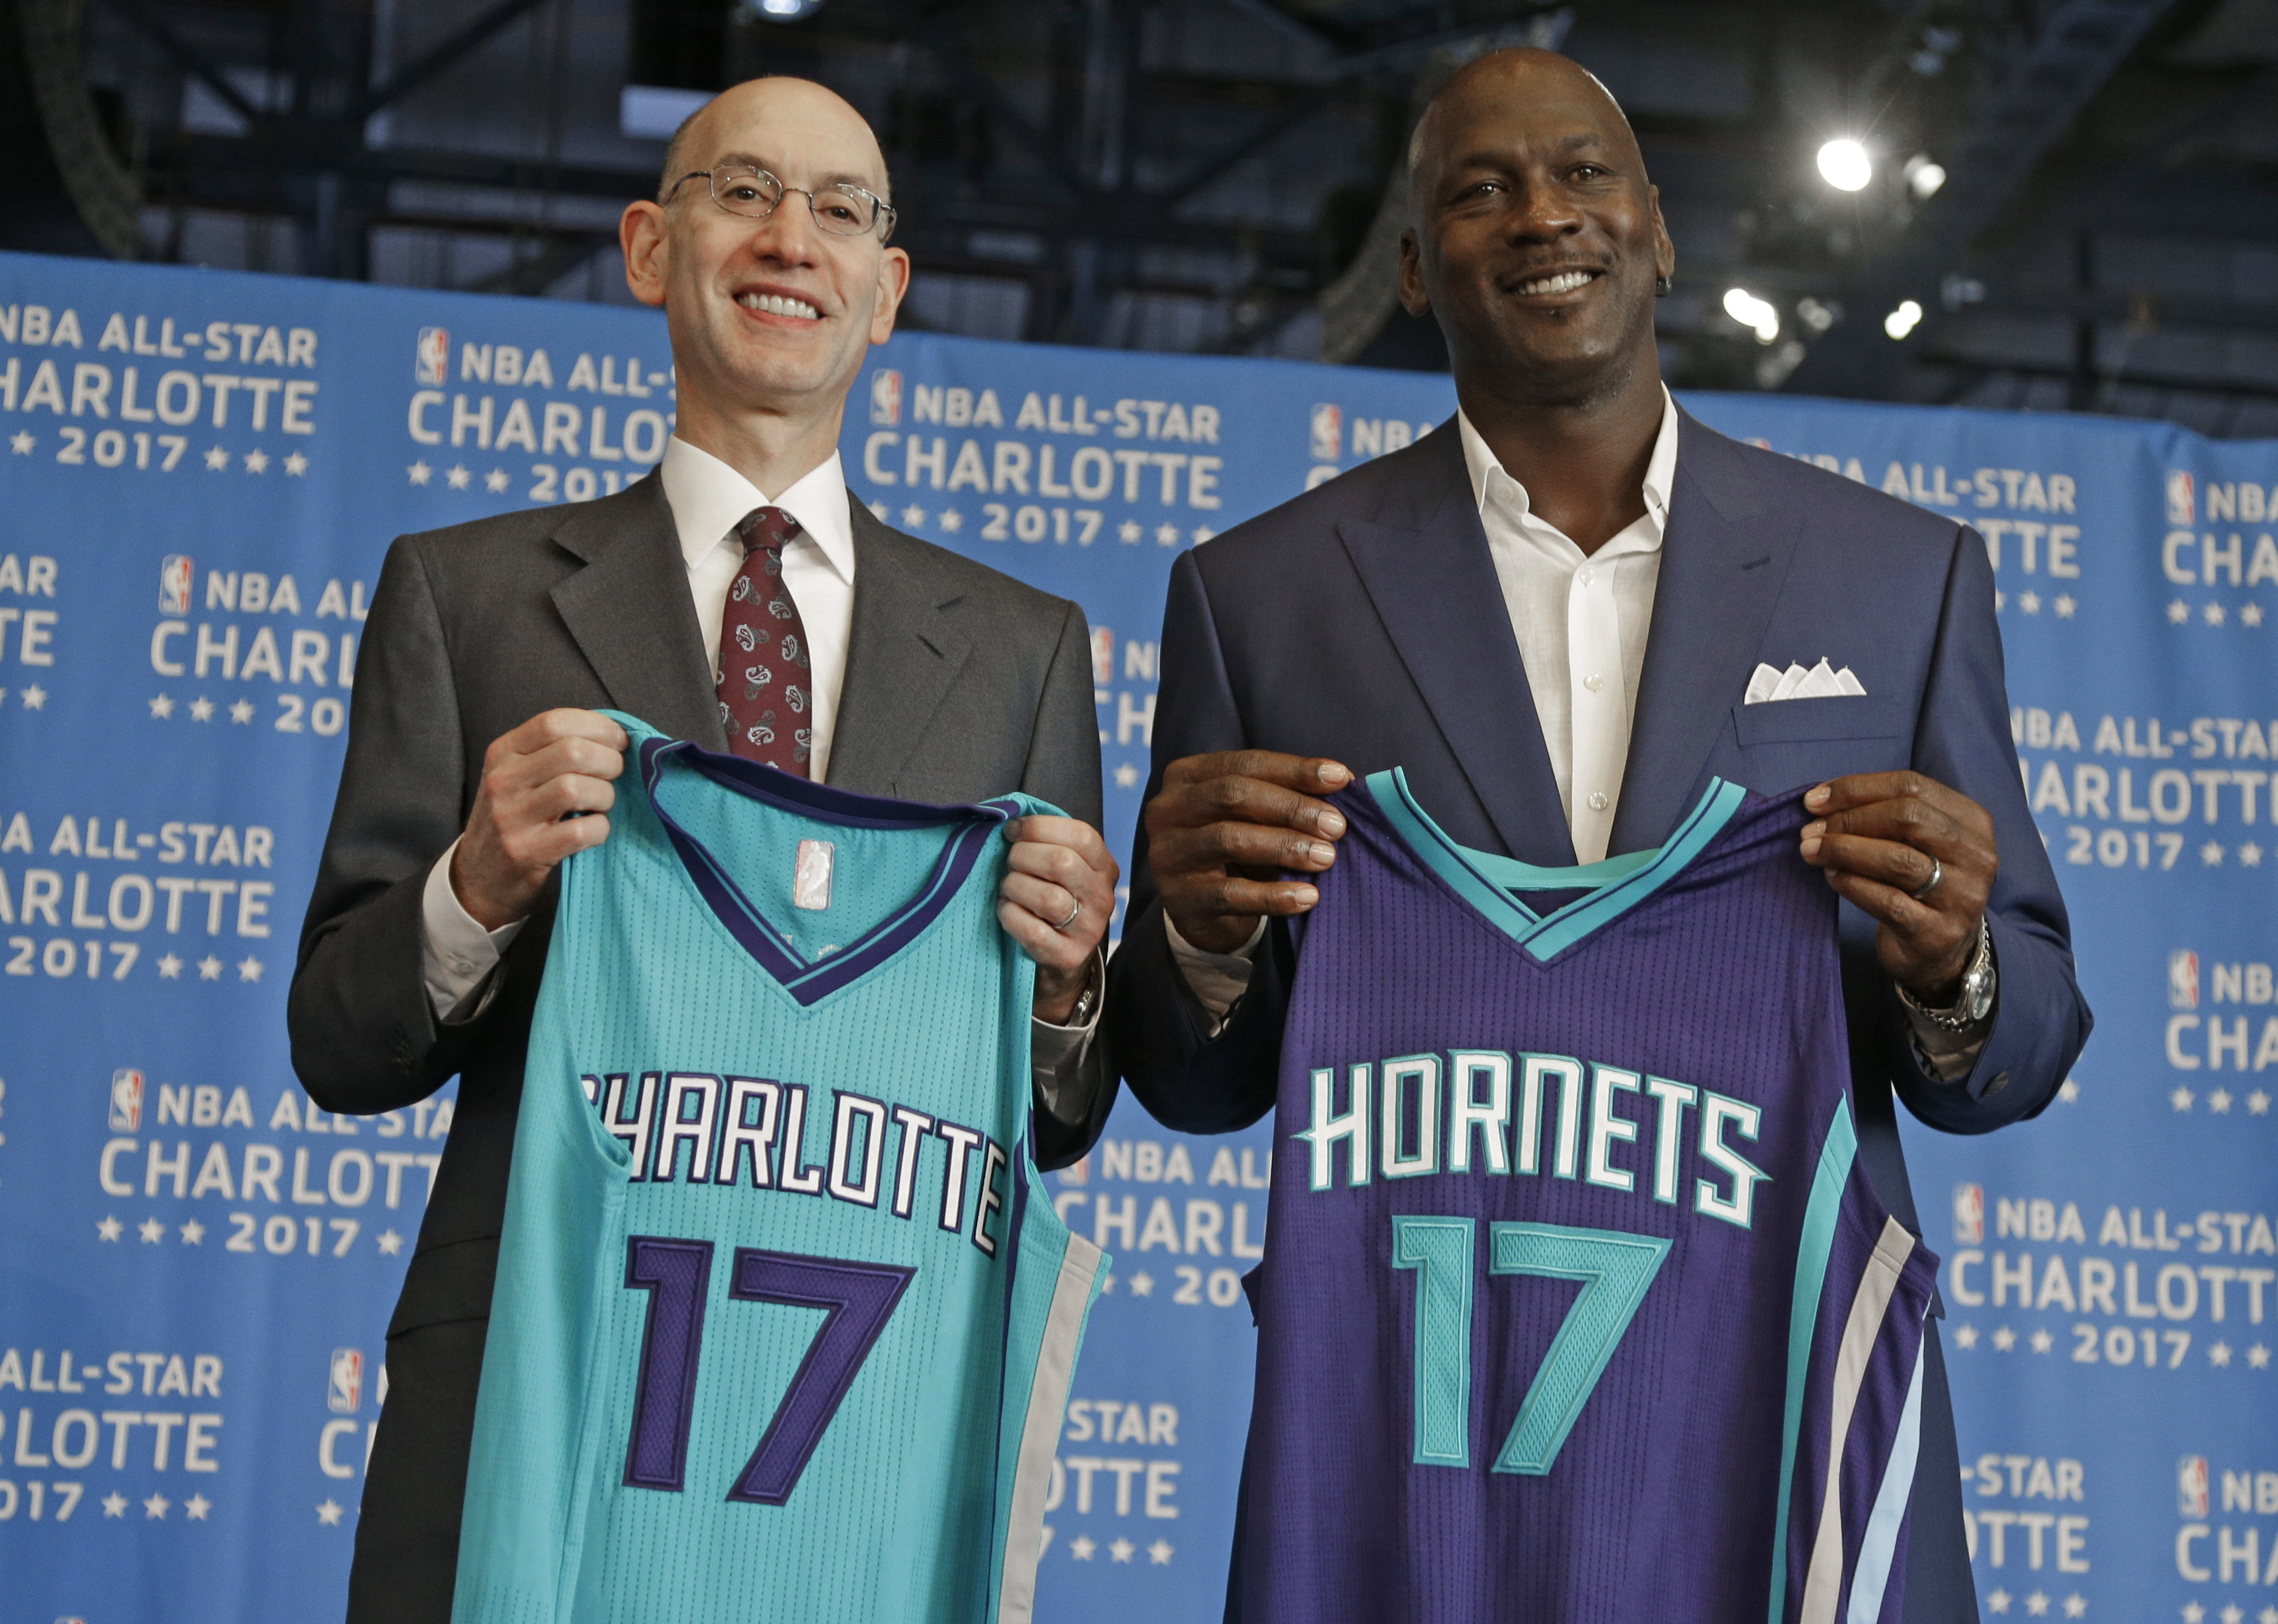  El comisionado de la NBA Adam Silver (izquierda) y el dueño de los Hornets de Charlotte Michael Jordan posan durante el anuncio de Charlotte como sede del Juego de Estrellas de la NBA, el 23 de junio de 2015 (AP)